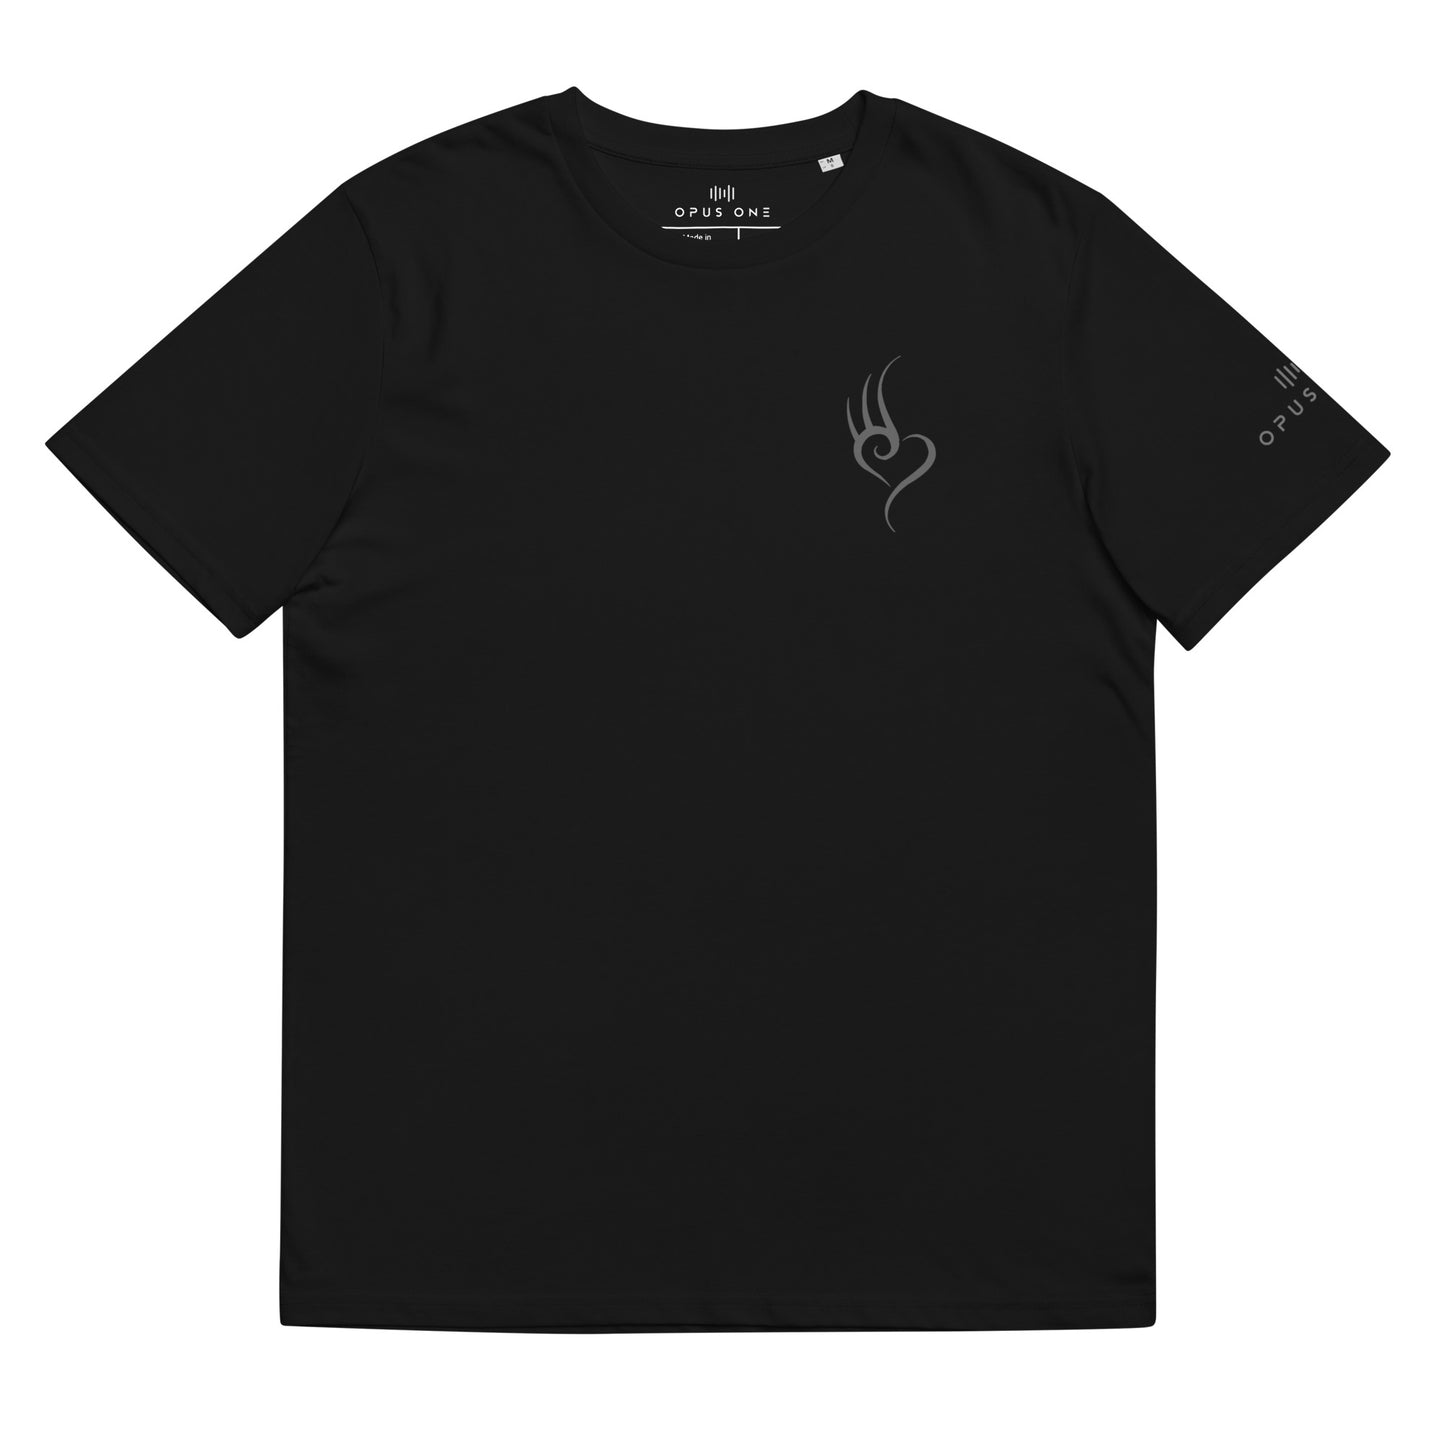 D&B (v2) Unisex organic cotton t-shirt (Grey Text)